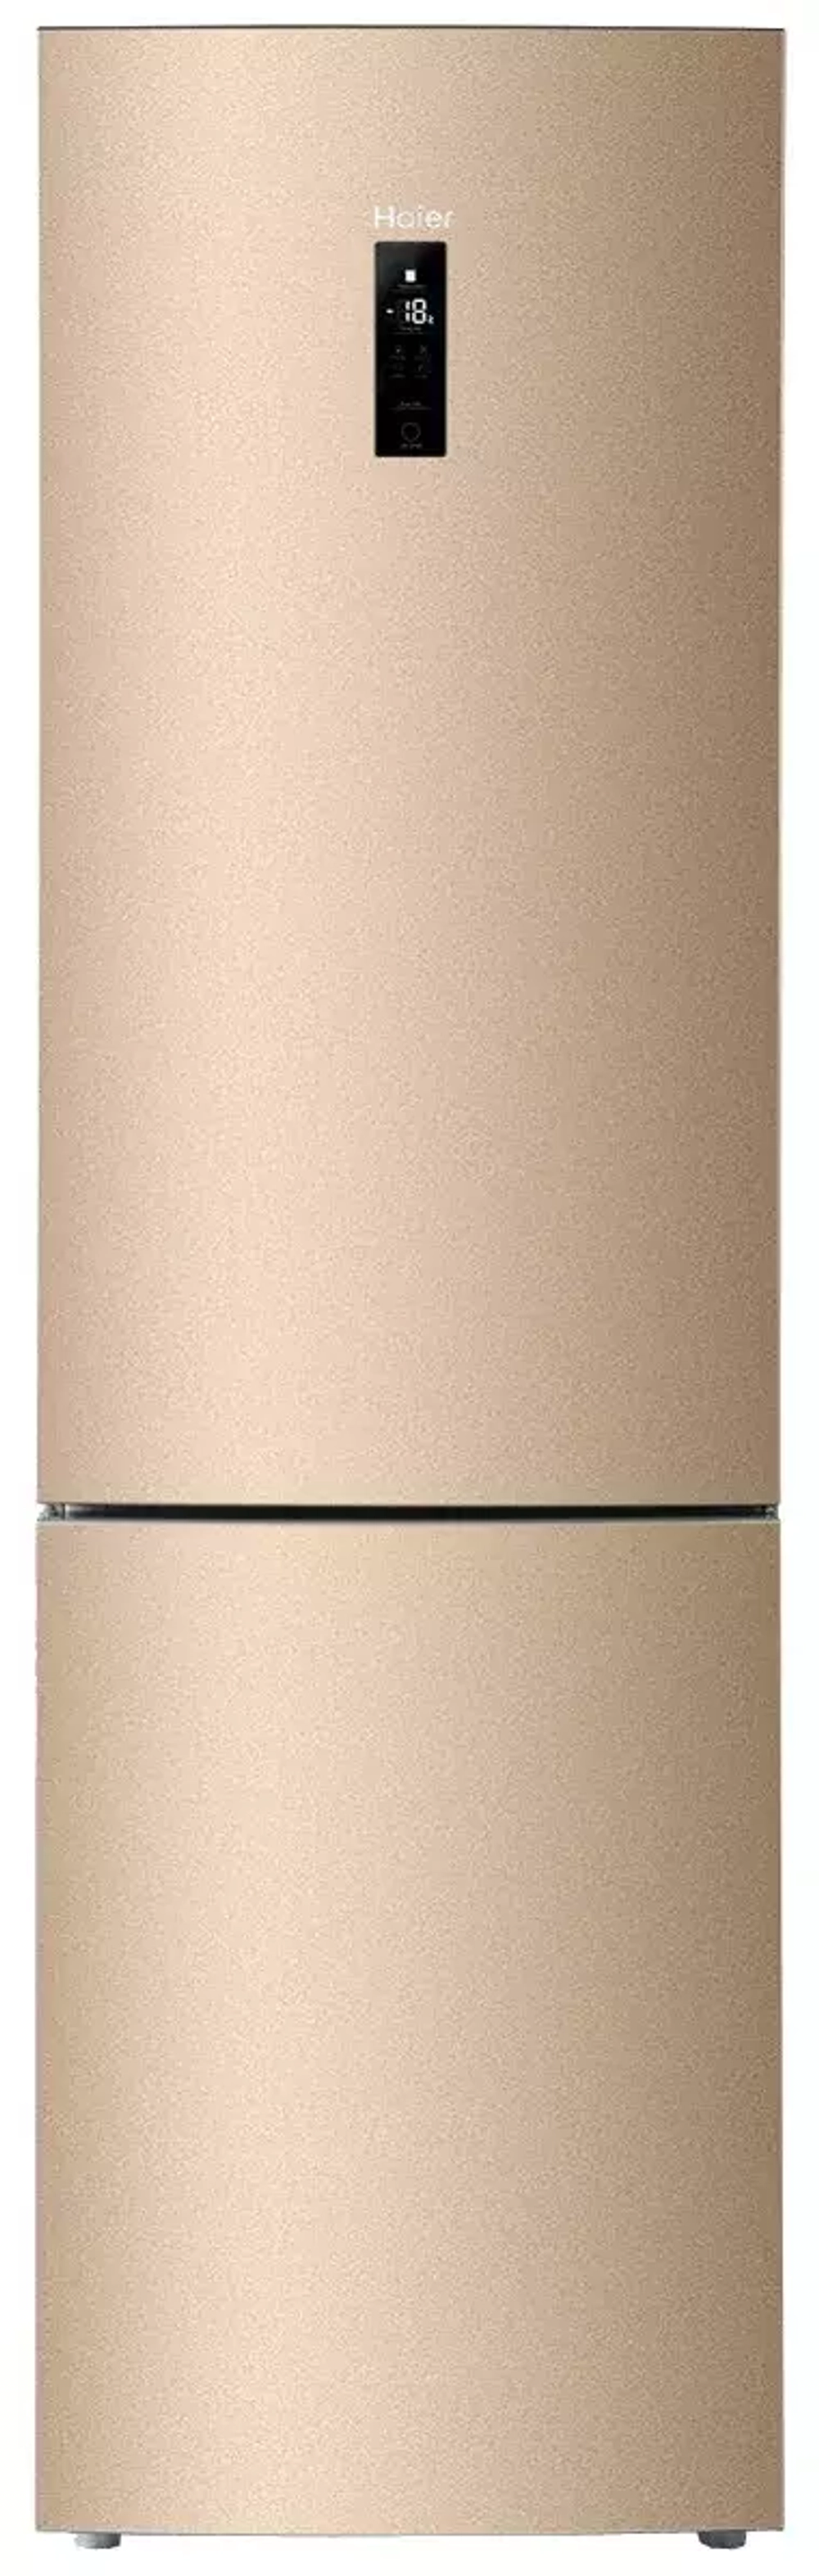 Холодильник Haier C2F637CGG 01.02